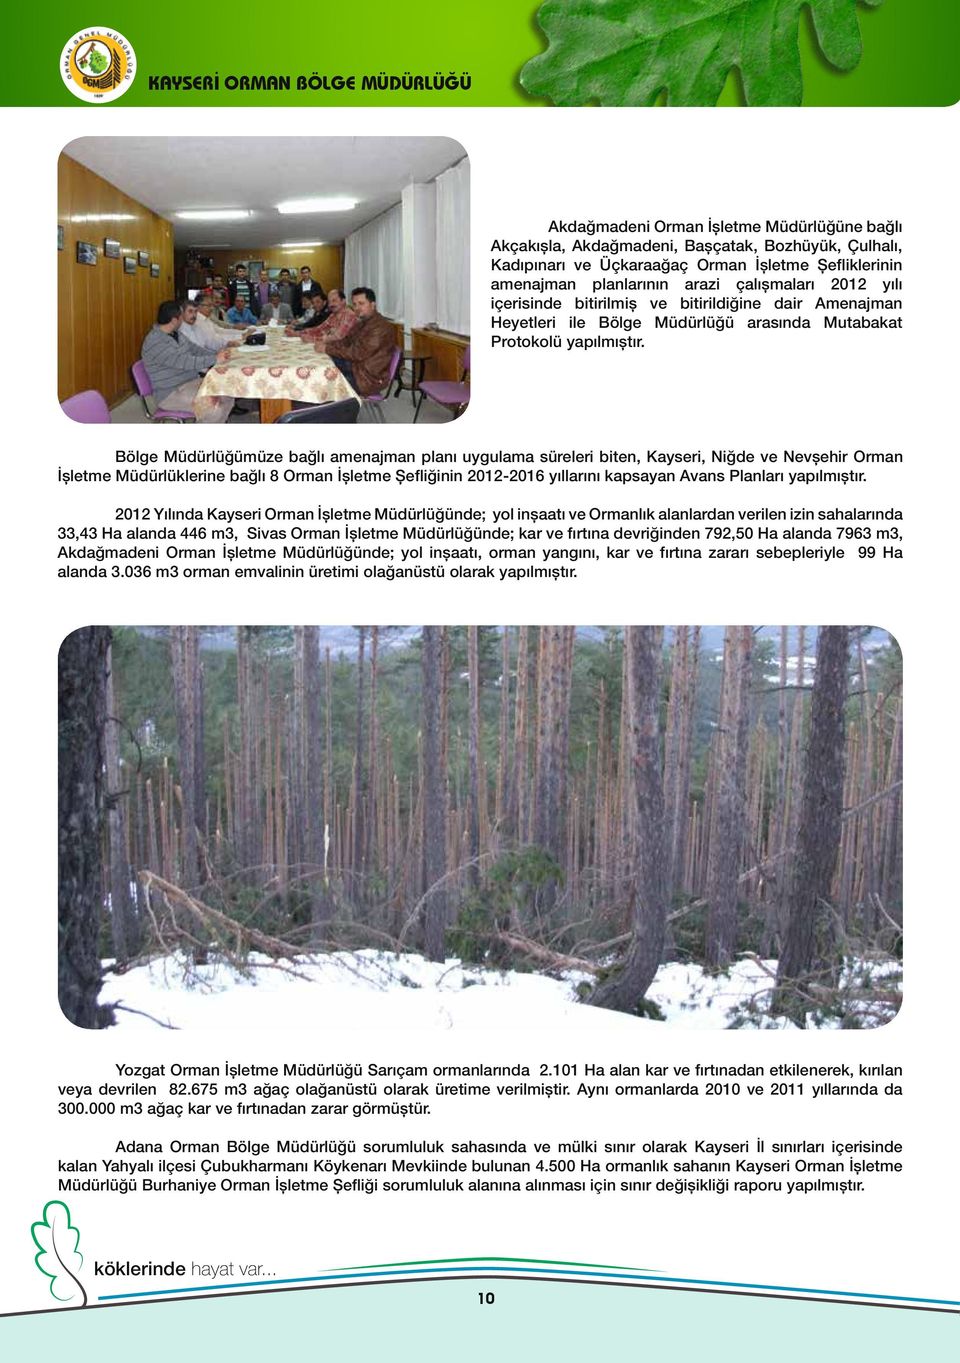 Bölge Müdürlüğümüze bağlı amenajman planı uygulama süreleri biten, Kayseri, Niğde ve Nevşehir Orman İşletme Müdürlüklerine bağlı 8 Orman İşletme Şefliğinin 2012-2016 yıllarını kapsayan Avans Planları